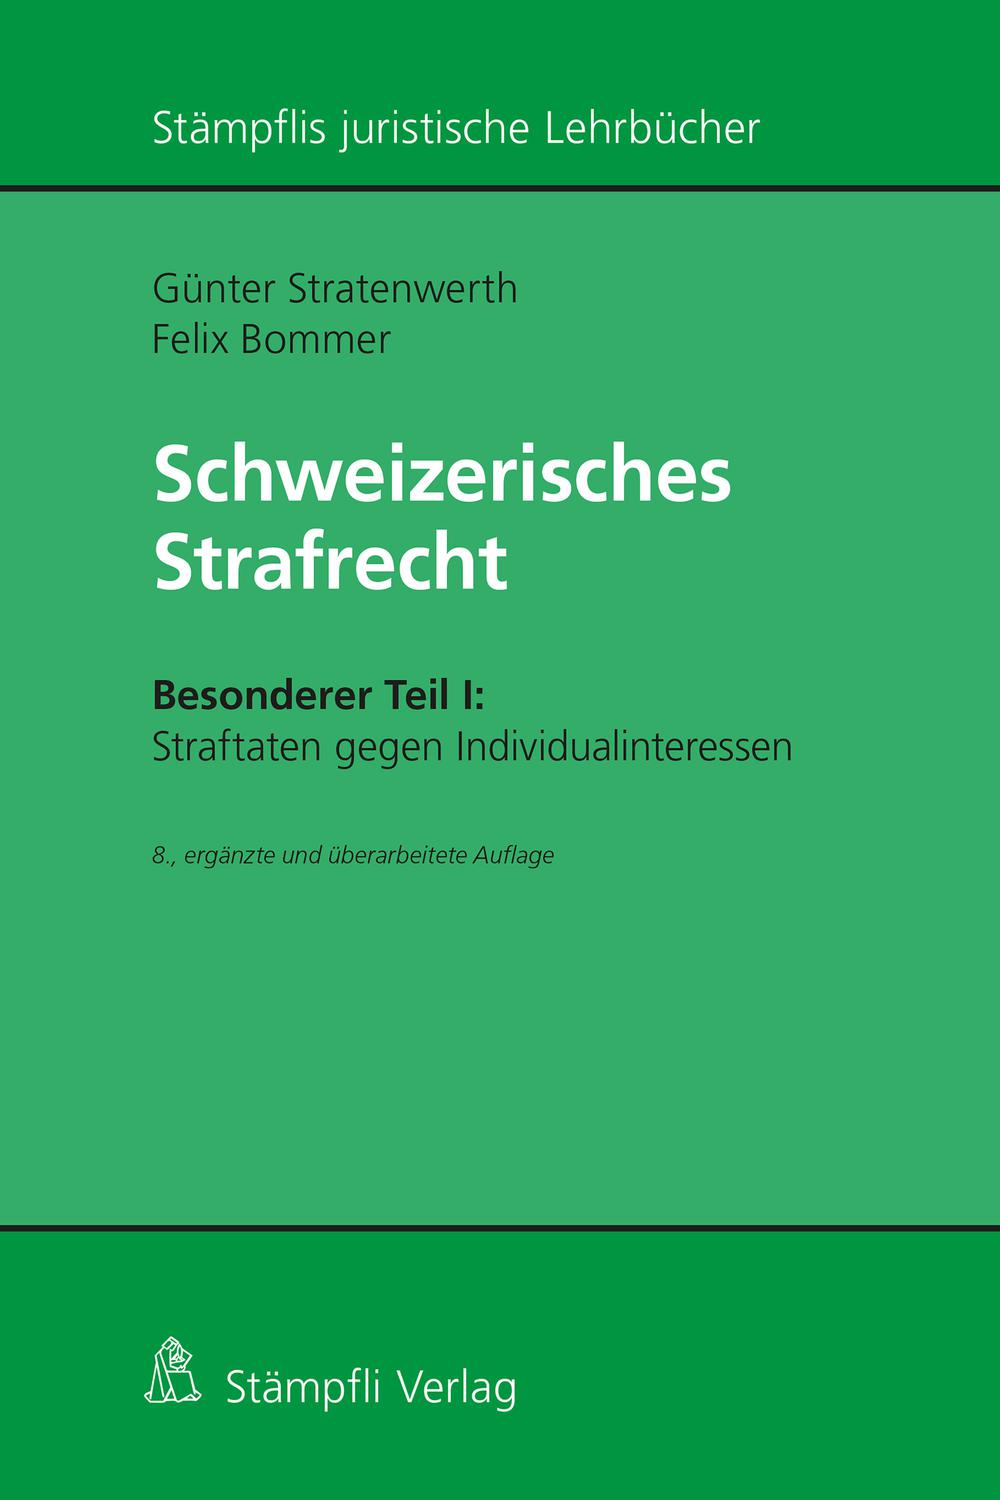 Schweizerisches Strafrecht, Besonderer Teil I: Straftaten gegen Individualinteressen - Felix Bommer, G?nter Stratenwerth,,